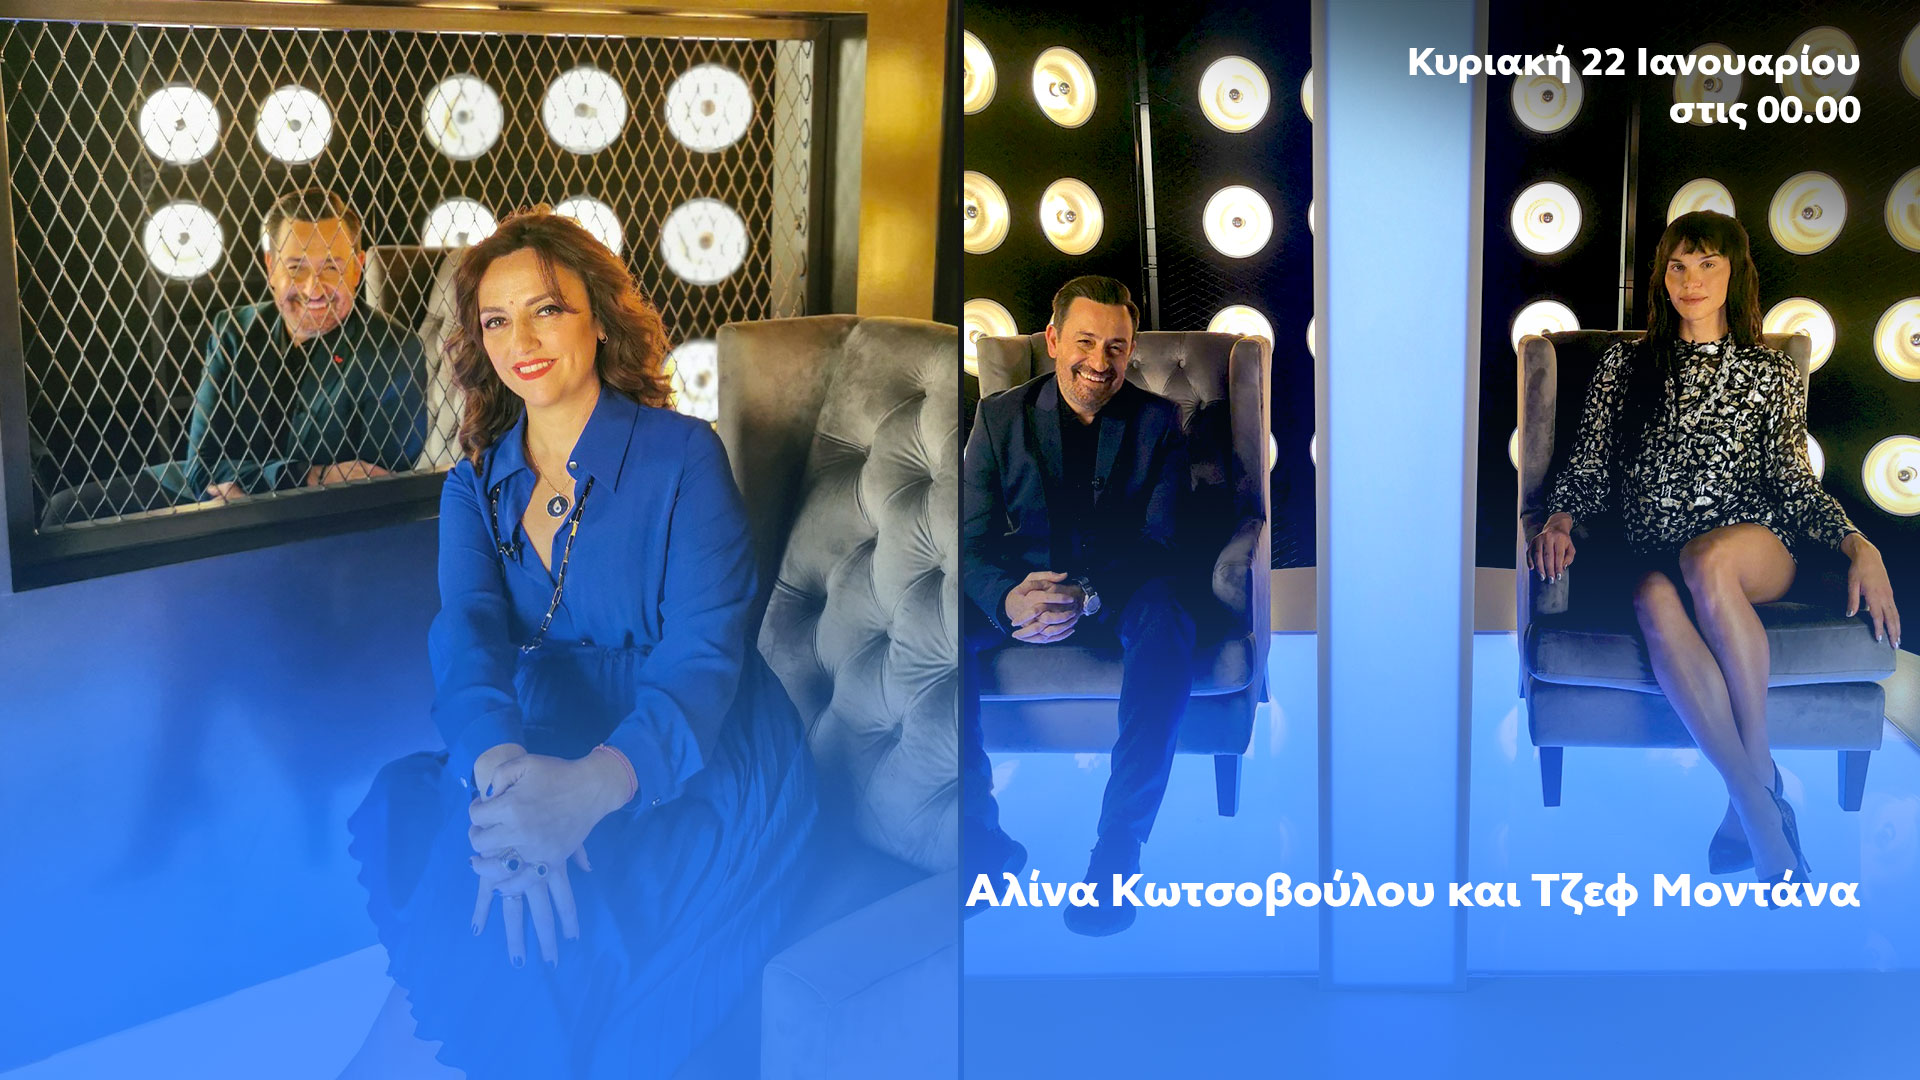 Δελτίο τύπου - After Dark - Αλίνα Κωτσοβούλου και Τζεφ Μοντάνα